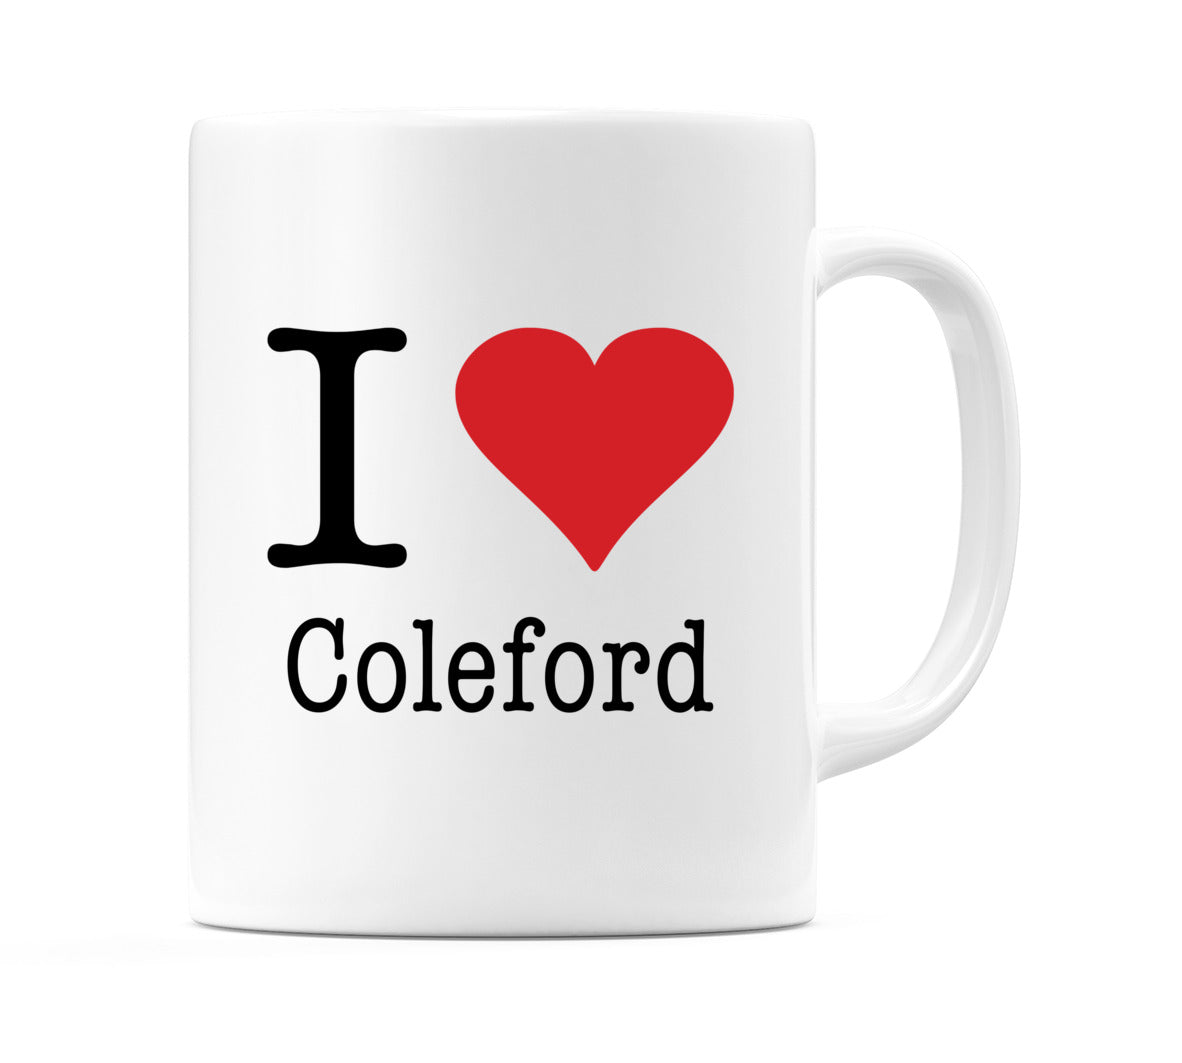 I Love Coleford Mug